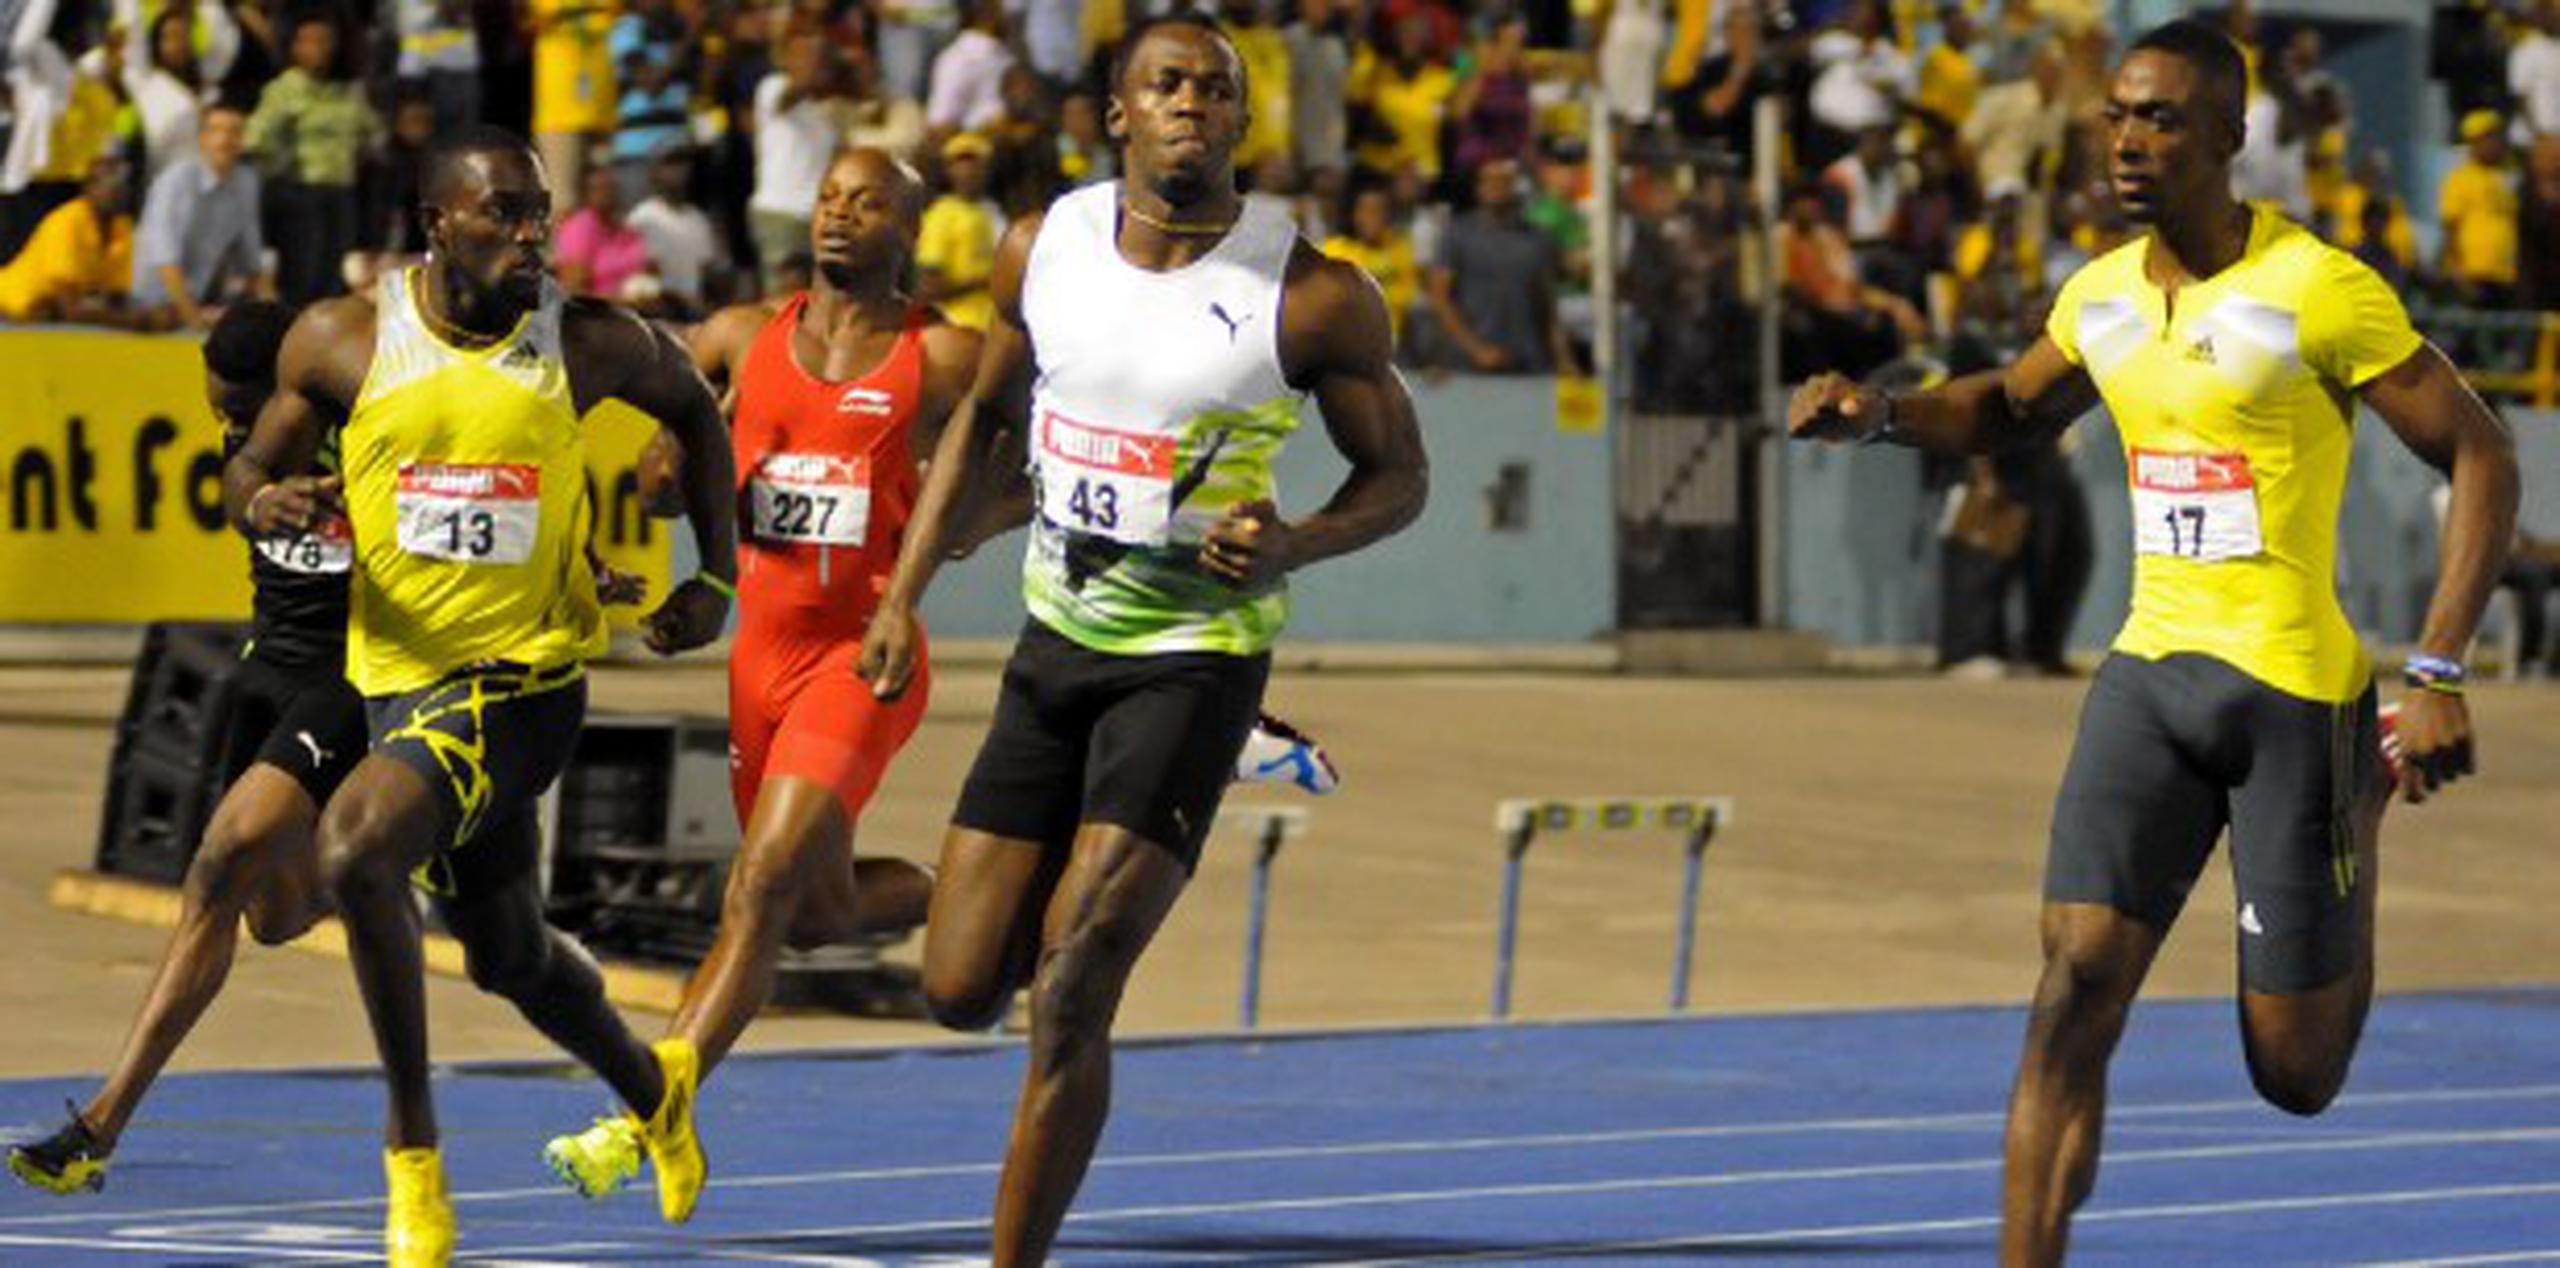 El corredor jamaiquino, Usain Bolt (al centro), cronometró 9.94 segundos en los 100 metros para vencer a sus compatriotas en campeonato nacional de Jamaica. (Collin Reid / AP).